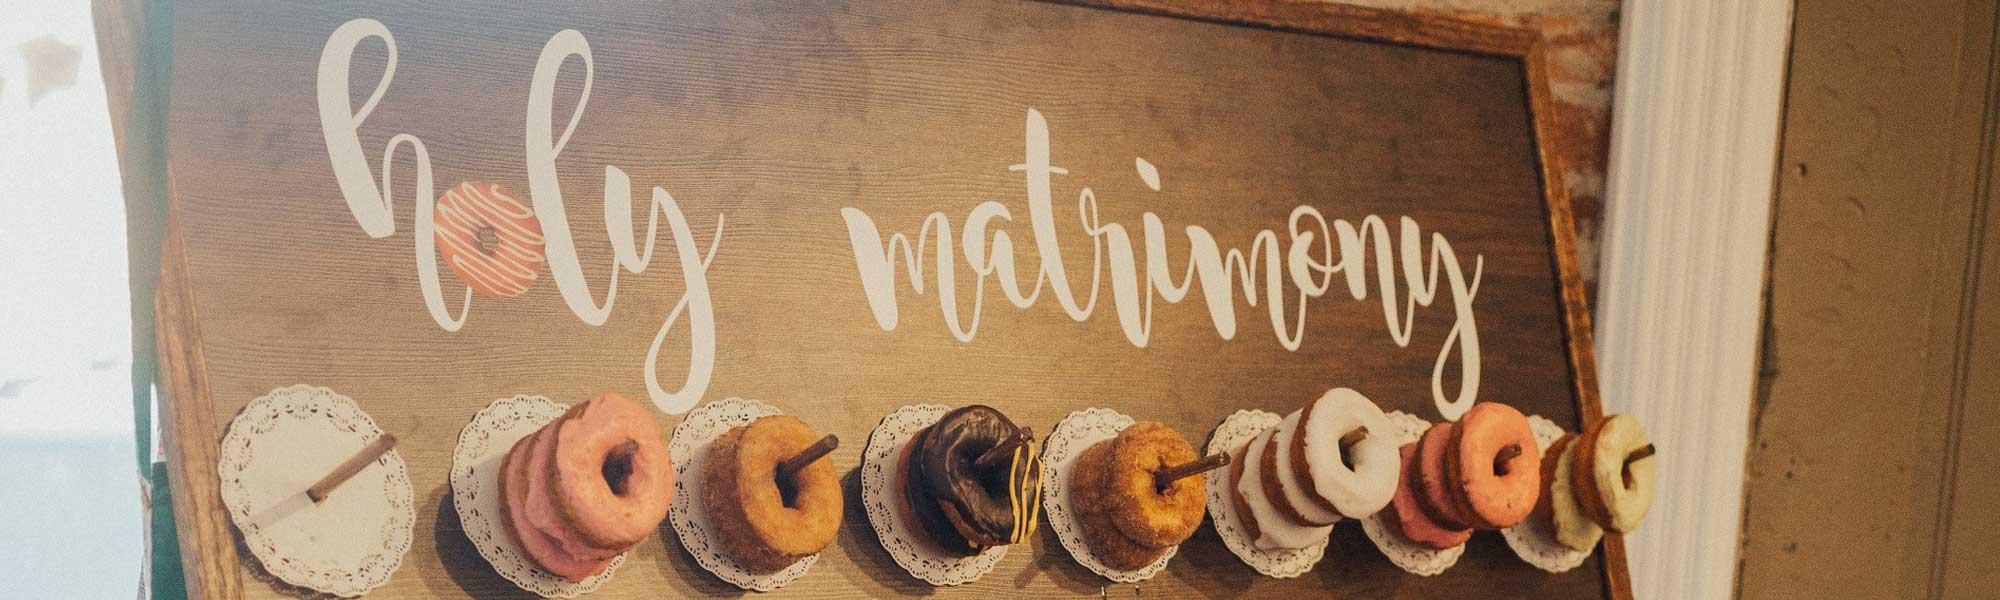 Donuts at wedding